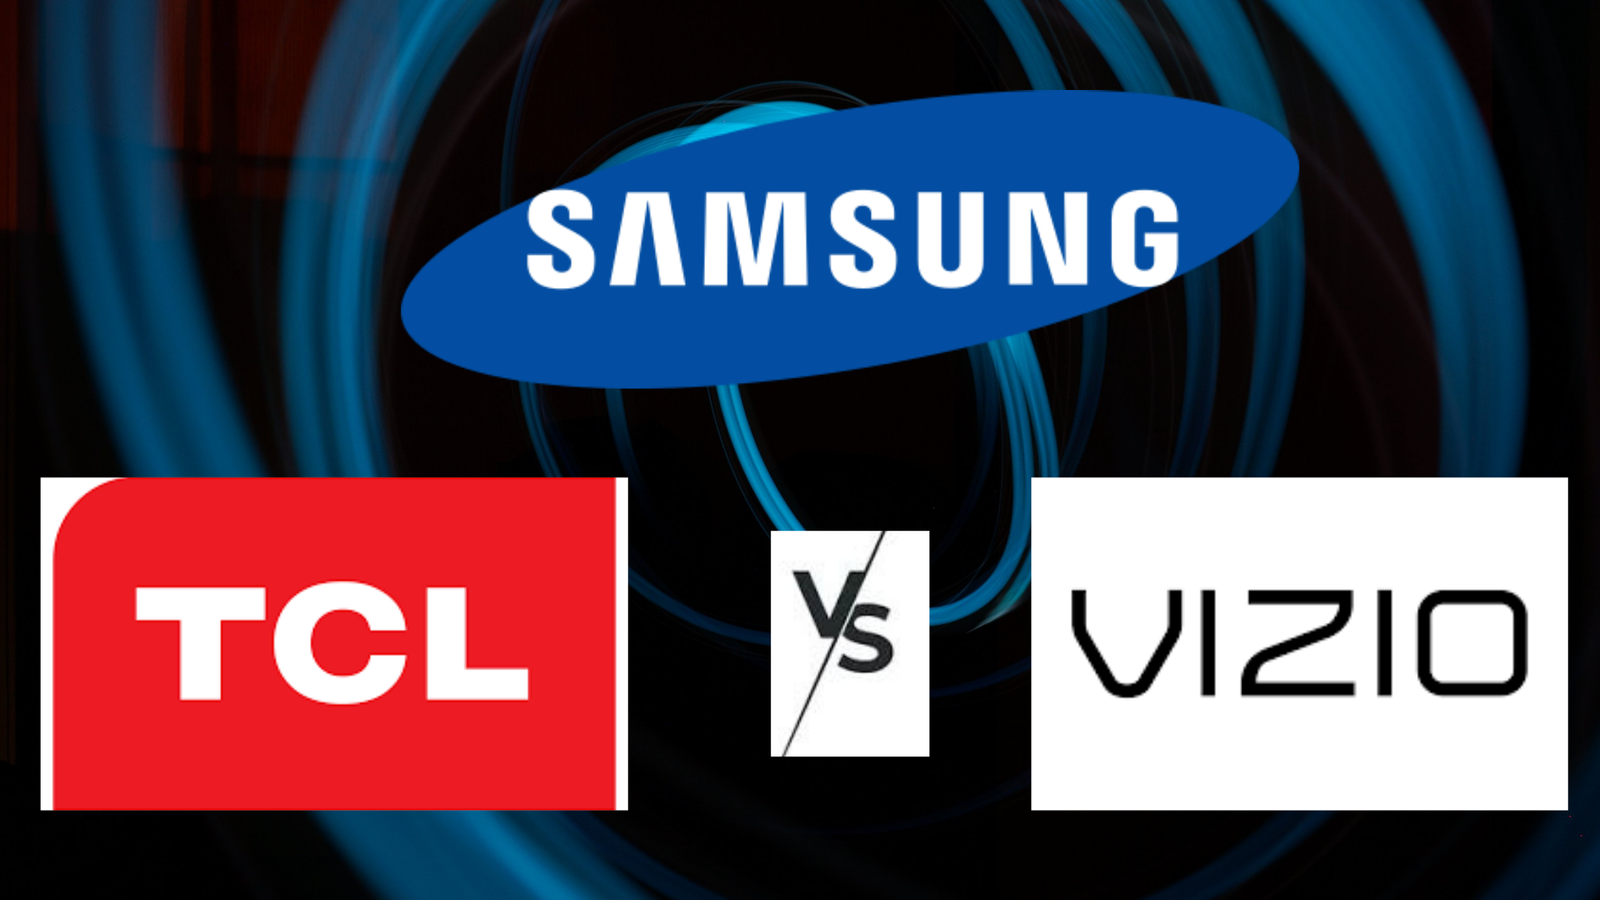 Vizio vs Samsung vs TCL TV Comparison